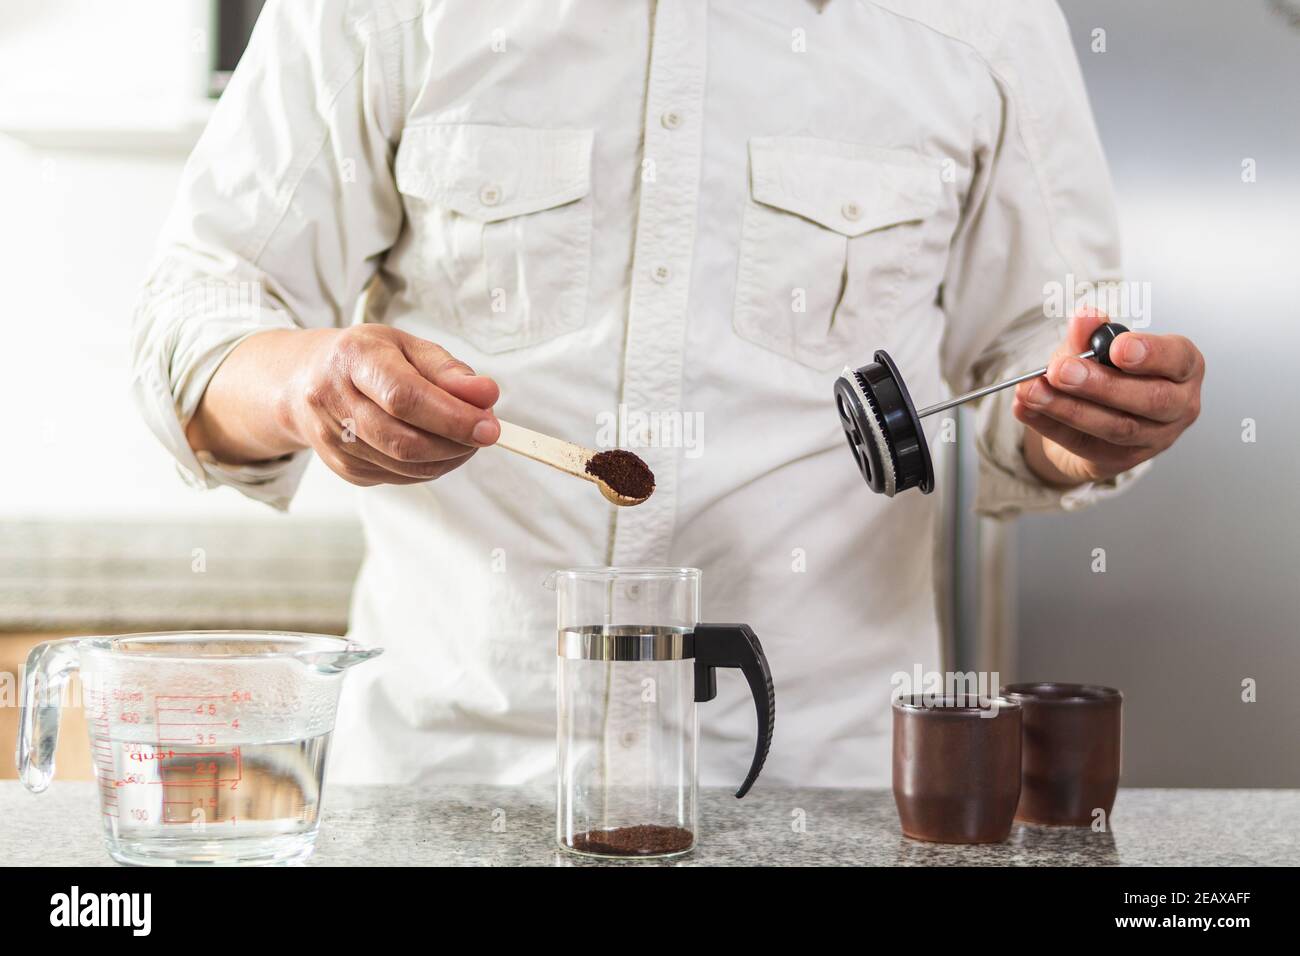 Tiro de un hombre cuya cara no se ve colocar Café molido con una cuchara en  una prensa francesa para prepare café recién hecho para dos tazas  Fotografía de stock - Alamy